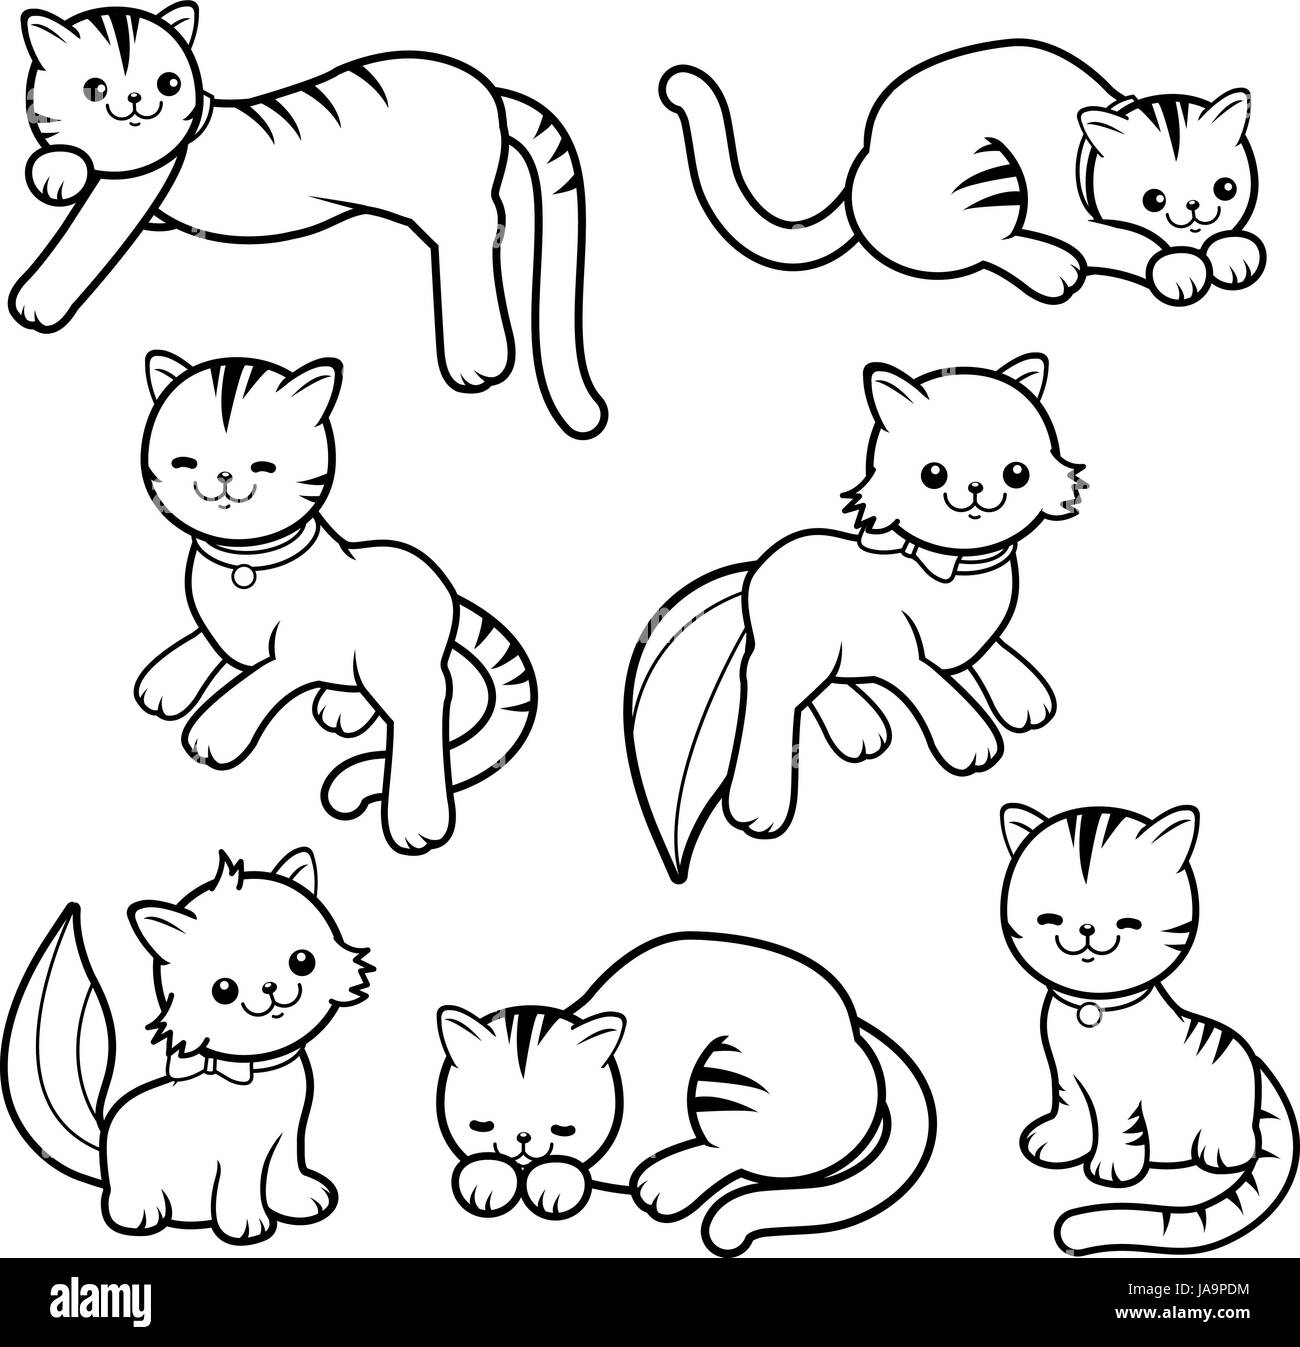 Schwarz / weiß-Cartoon-Katzen Stock Vektor